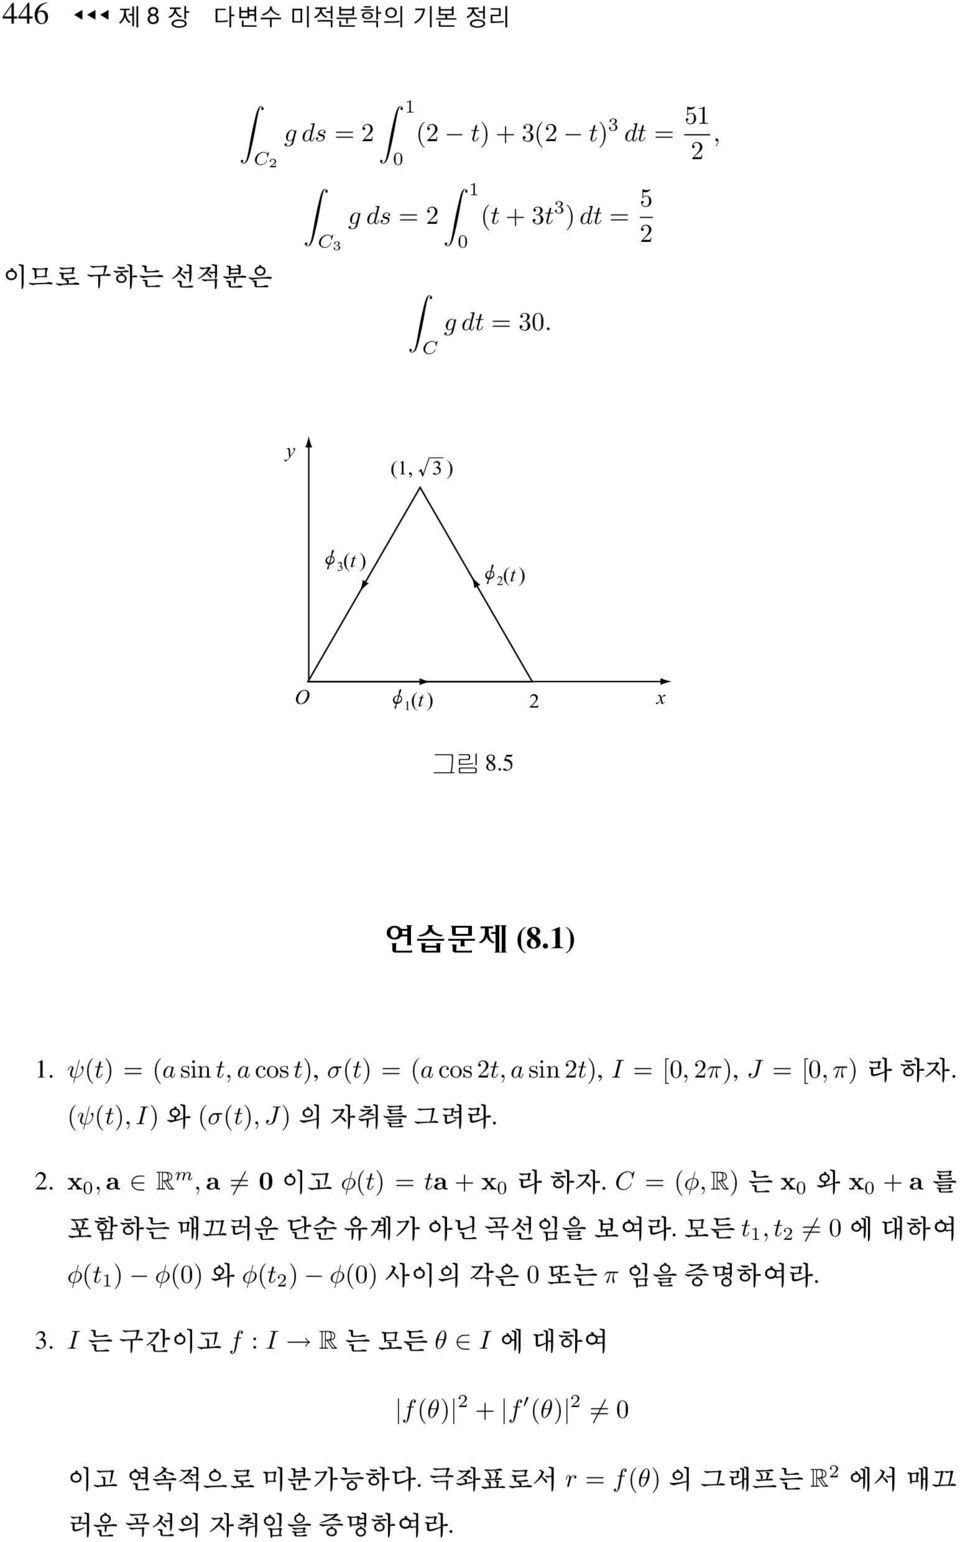 ψ(t) = (a sin t, a cos t), σ(t) = (a cos 2t, a sin 2t), I = [, 2π), J = [, π).